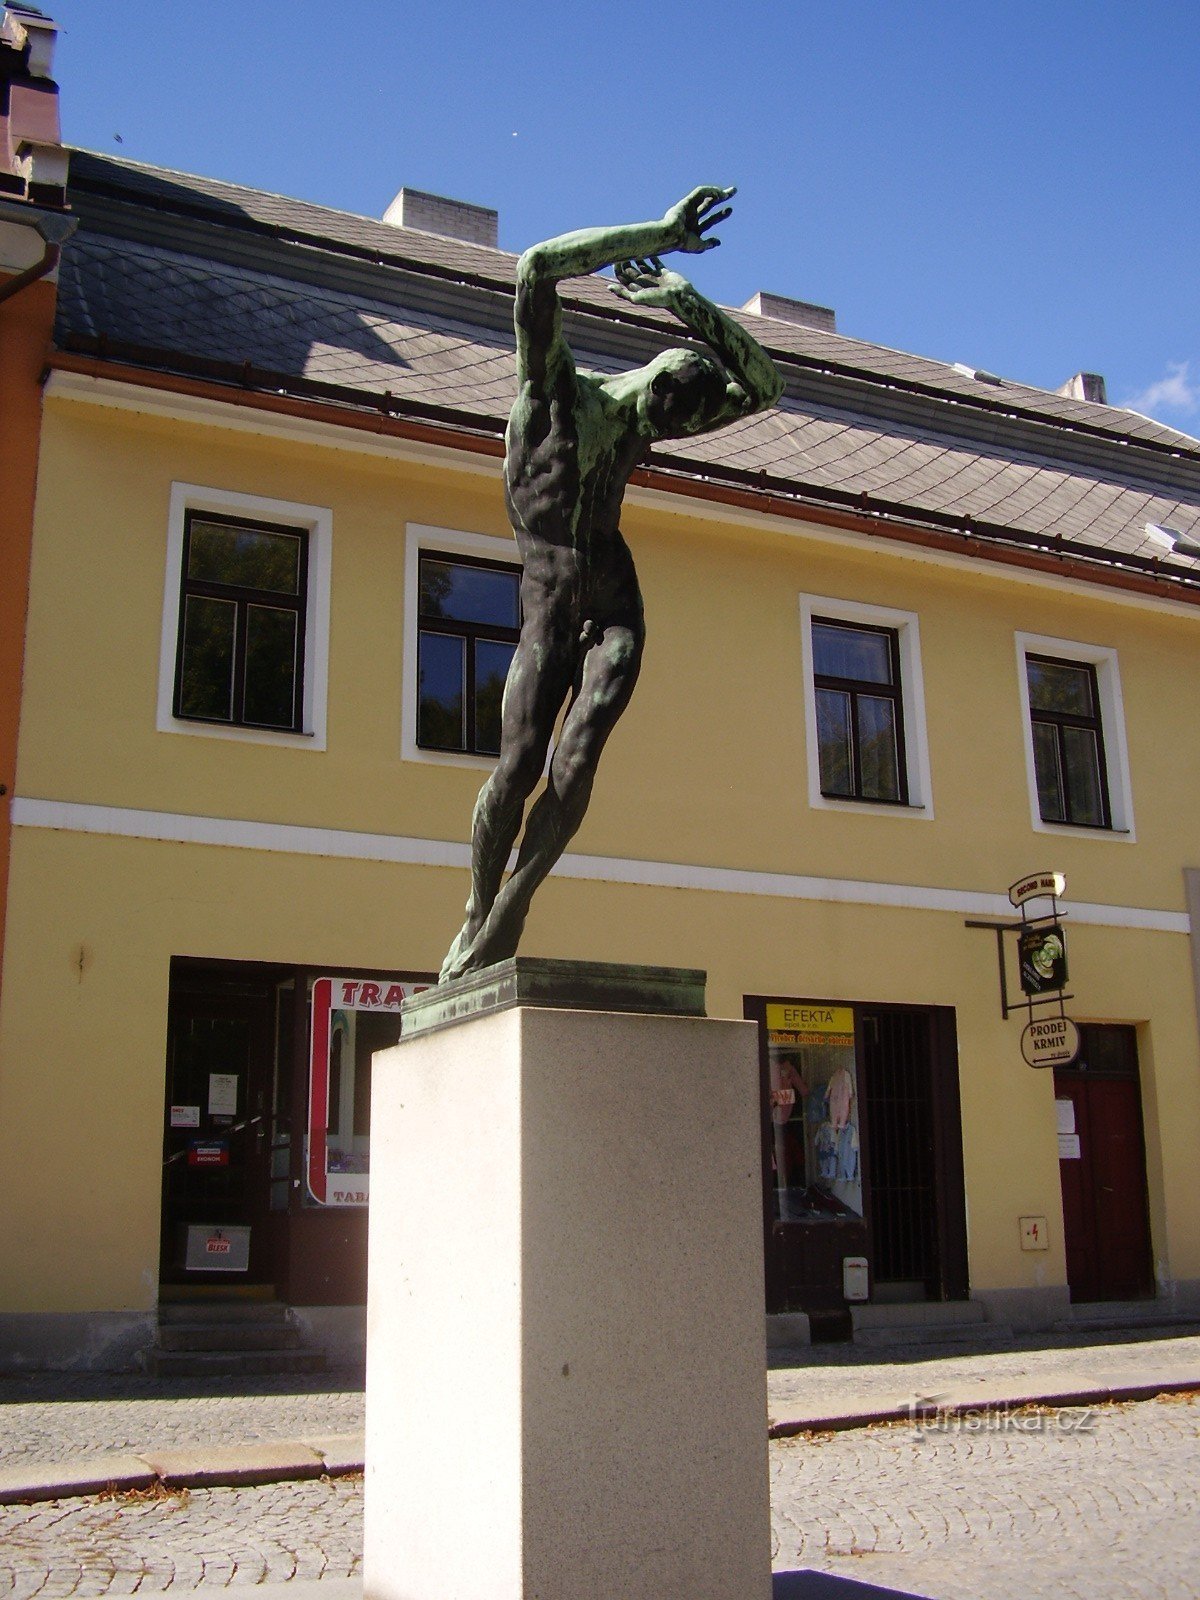 À Nové Město na Morava pour voir le sculpteur Jan Štursa